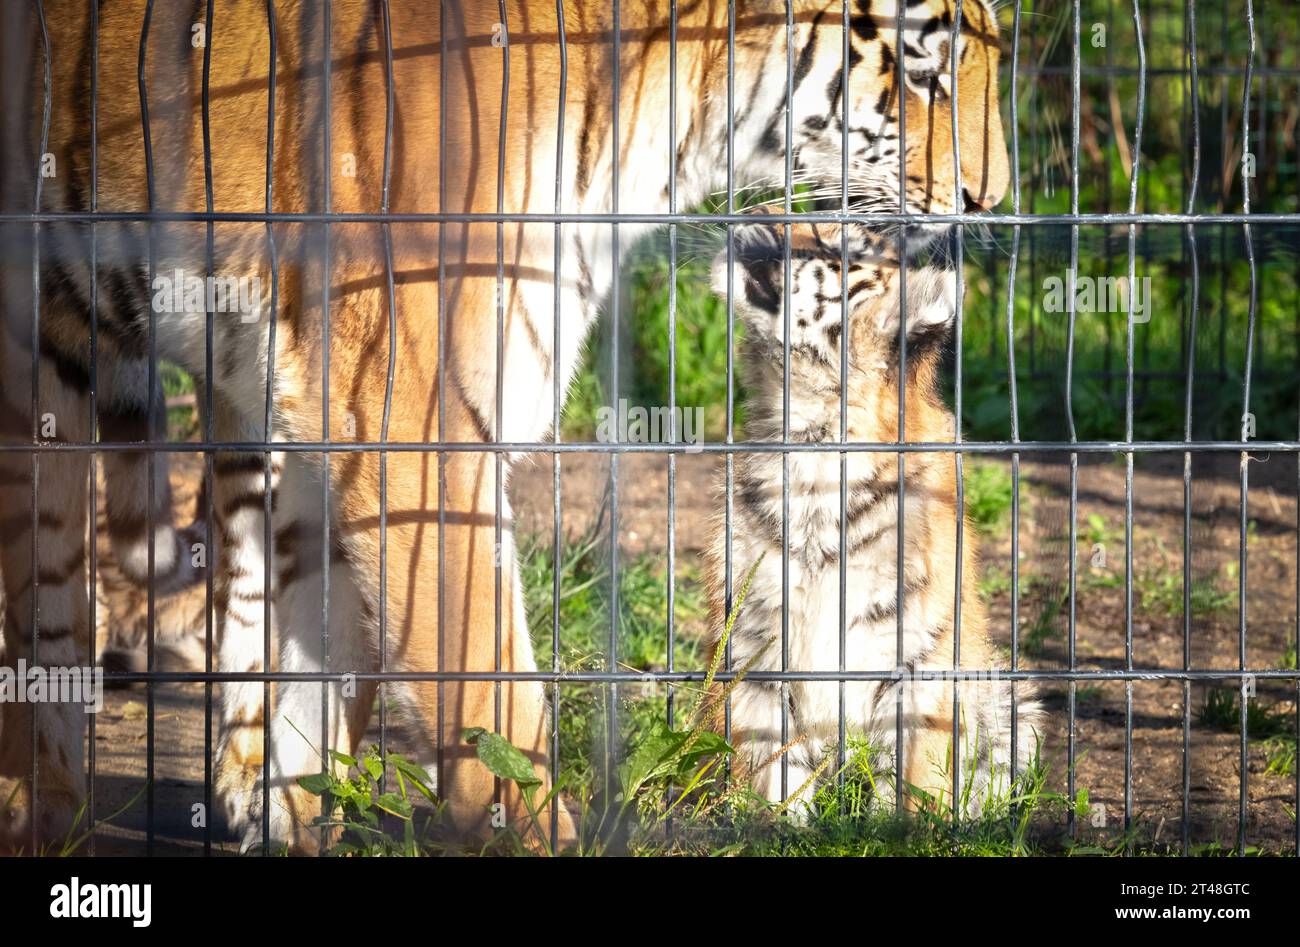 Bébé amour tigre derrière des clôtures, vivant en captivité - été Banque D'Images